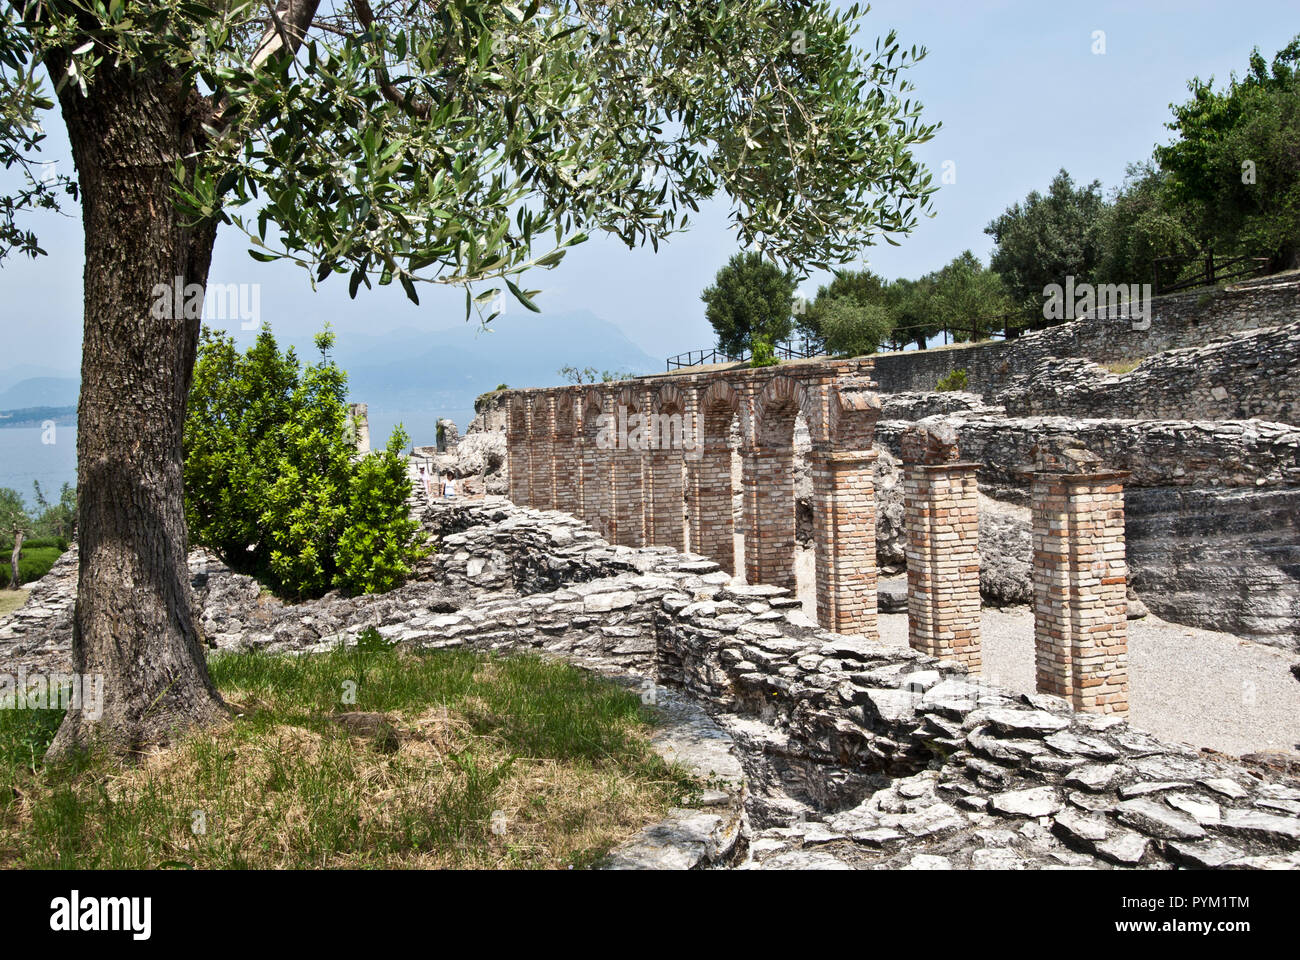 Rovine romane di sito archeologico sulla penisola di Sirmione sul Lago di Garda, Italia Foto Stock